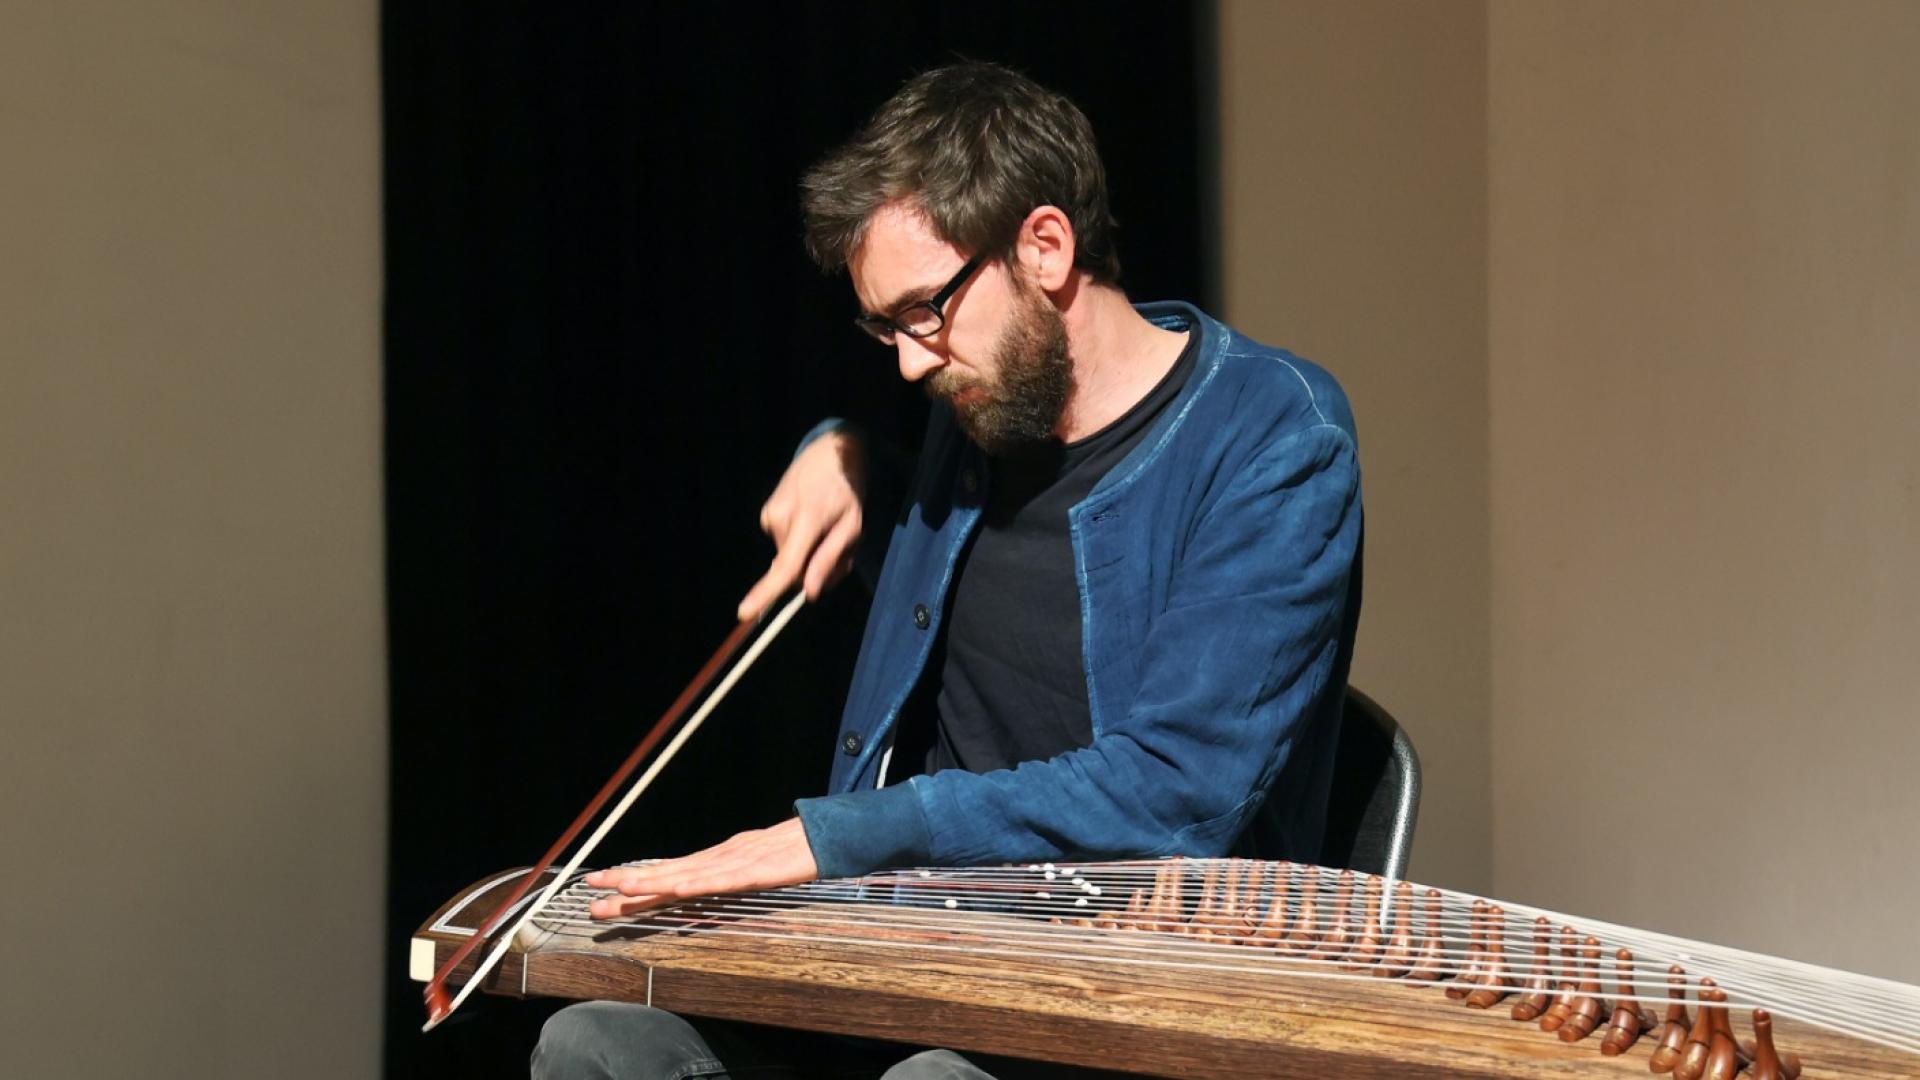 Sylvain Monchocé playing the gayageum